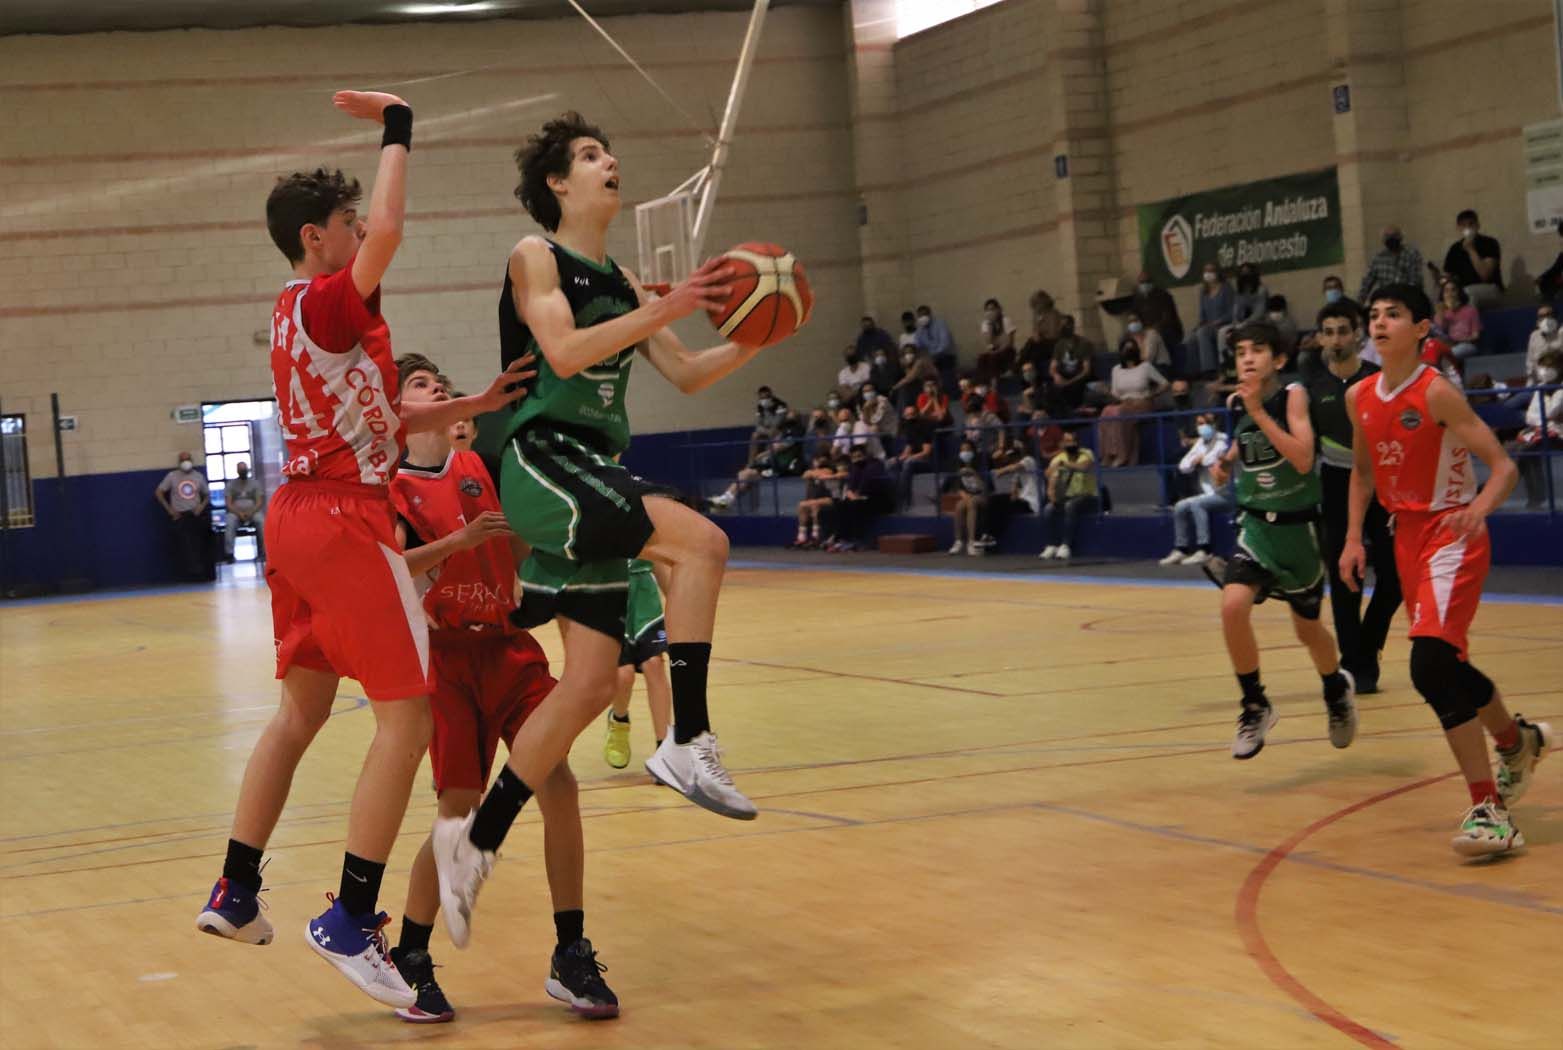 Maristas-Cordobasket final por el título provincial infantil masculino de baloncesto